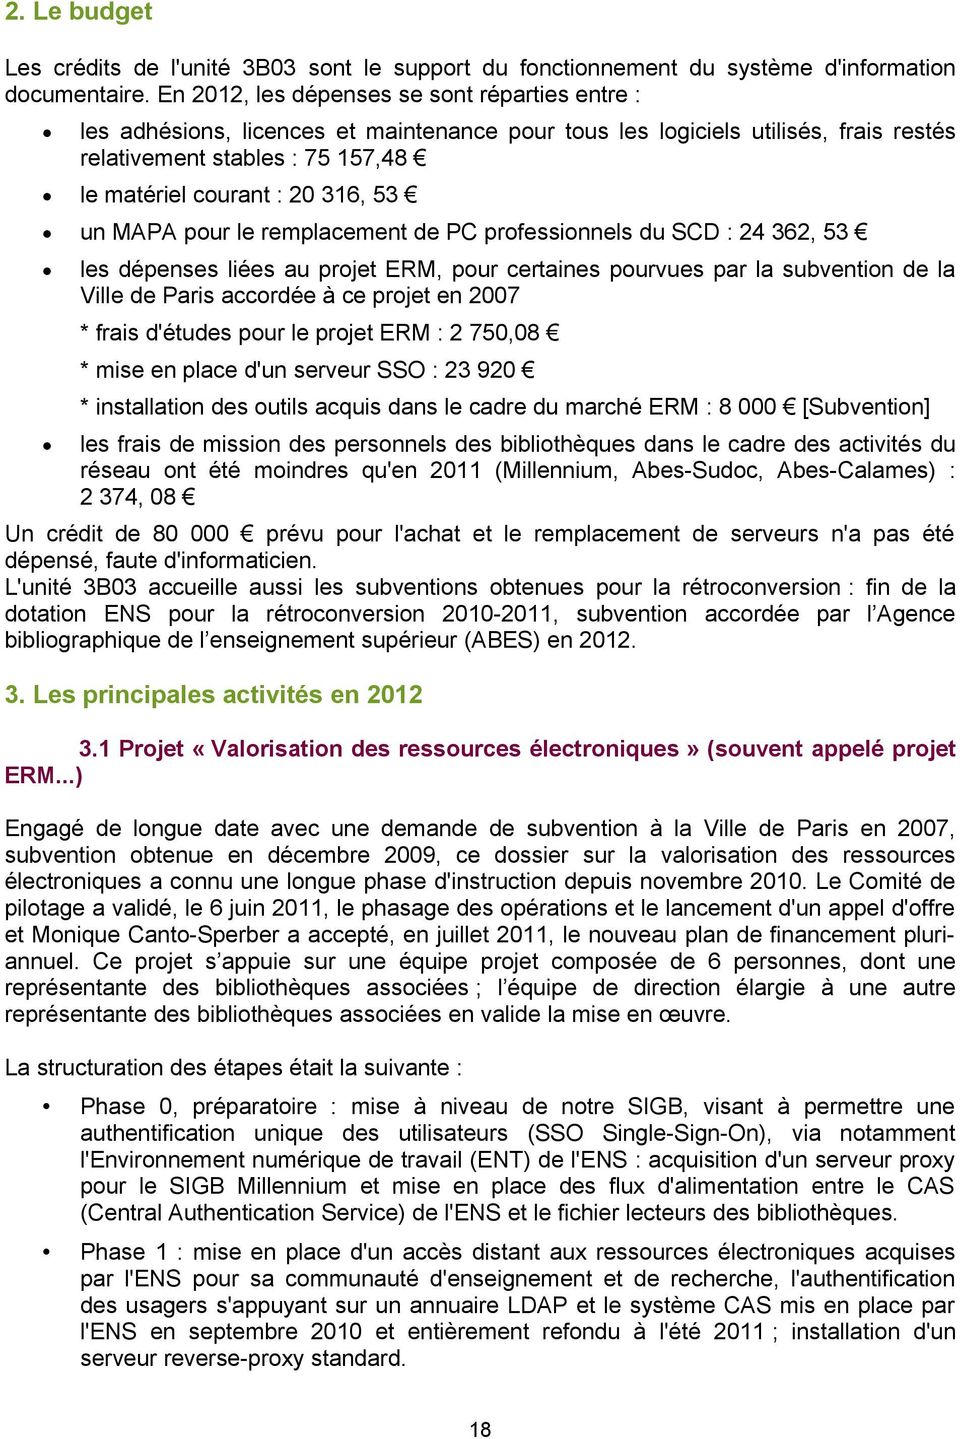 un MAPA pour le remplacement de PC professionnels du SCD : 24 362, 53 les dépenses liées au projet ERM, pour certaines pourvues par la subvention de la Ville de Paris accordée à ce projet en 2007 *